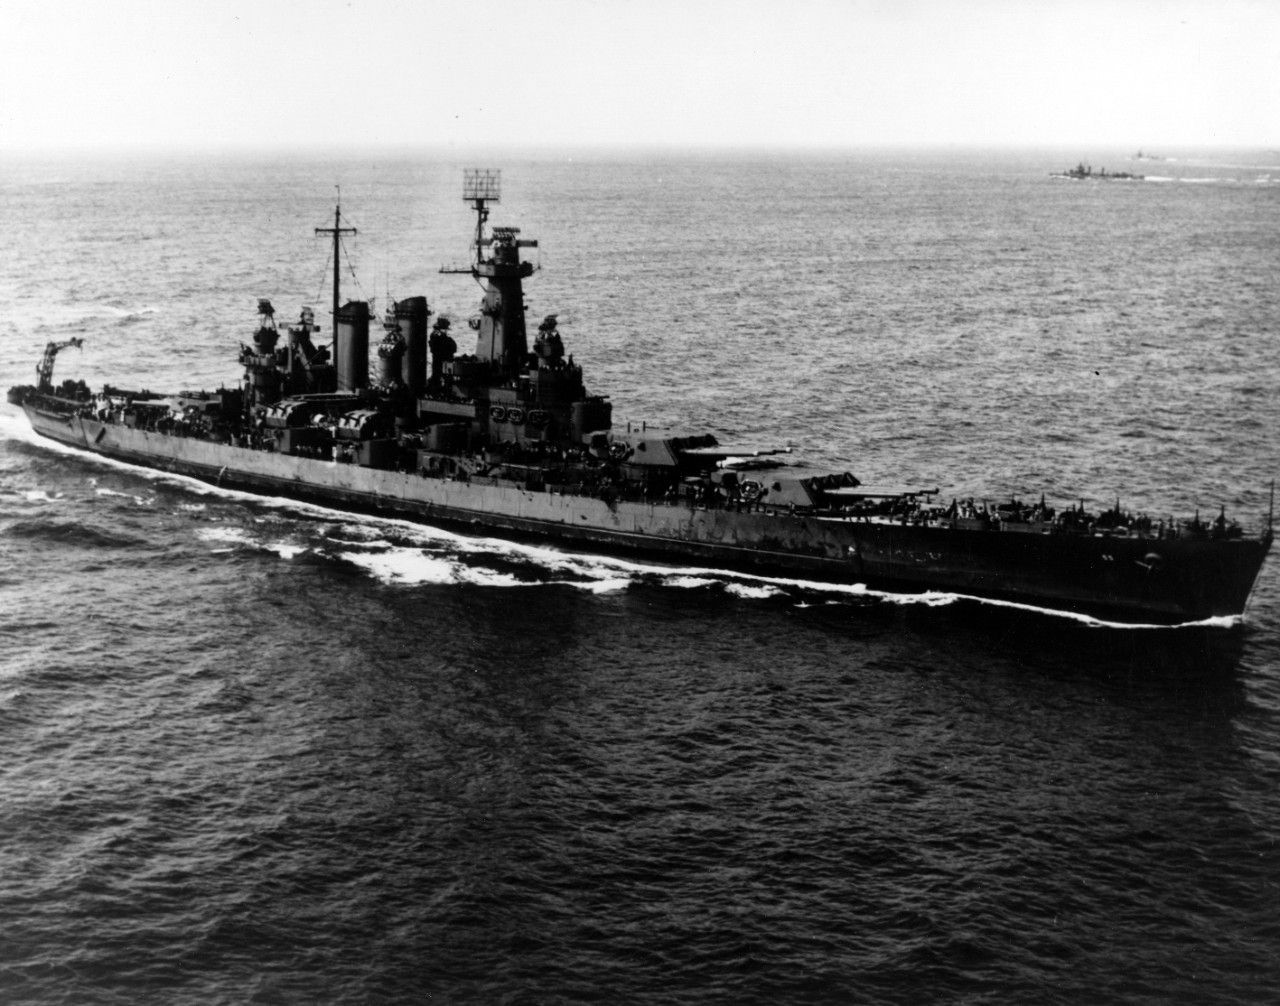 BSS North Carolina underway in the Hawaiian Islands on 27, March 1943.